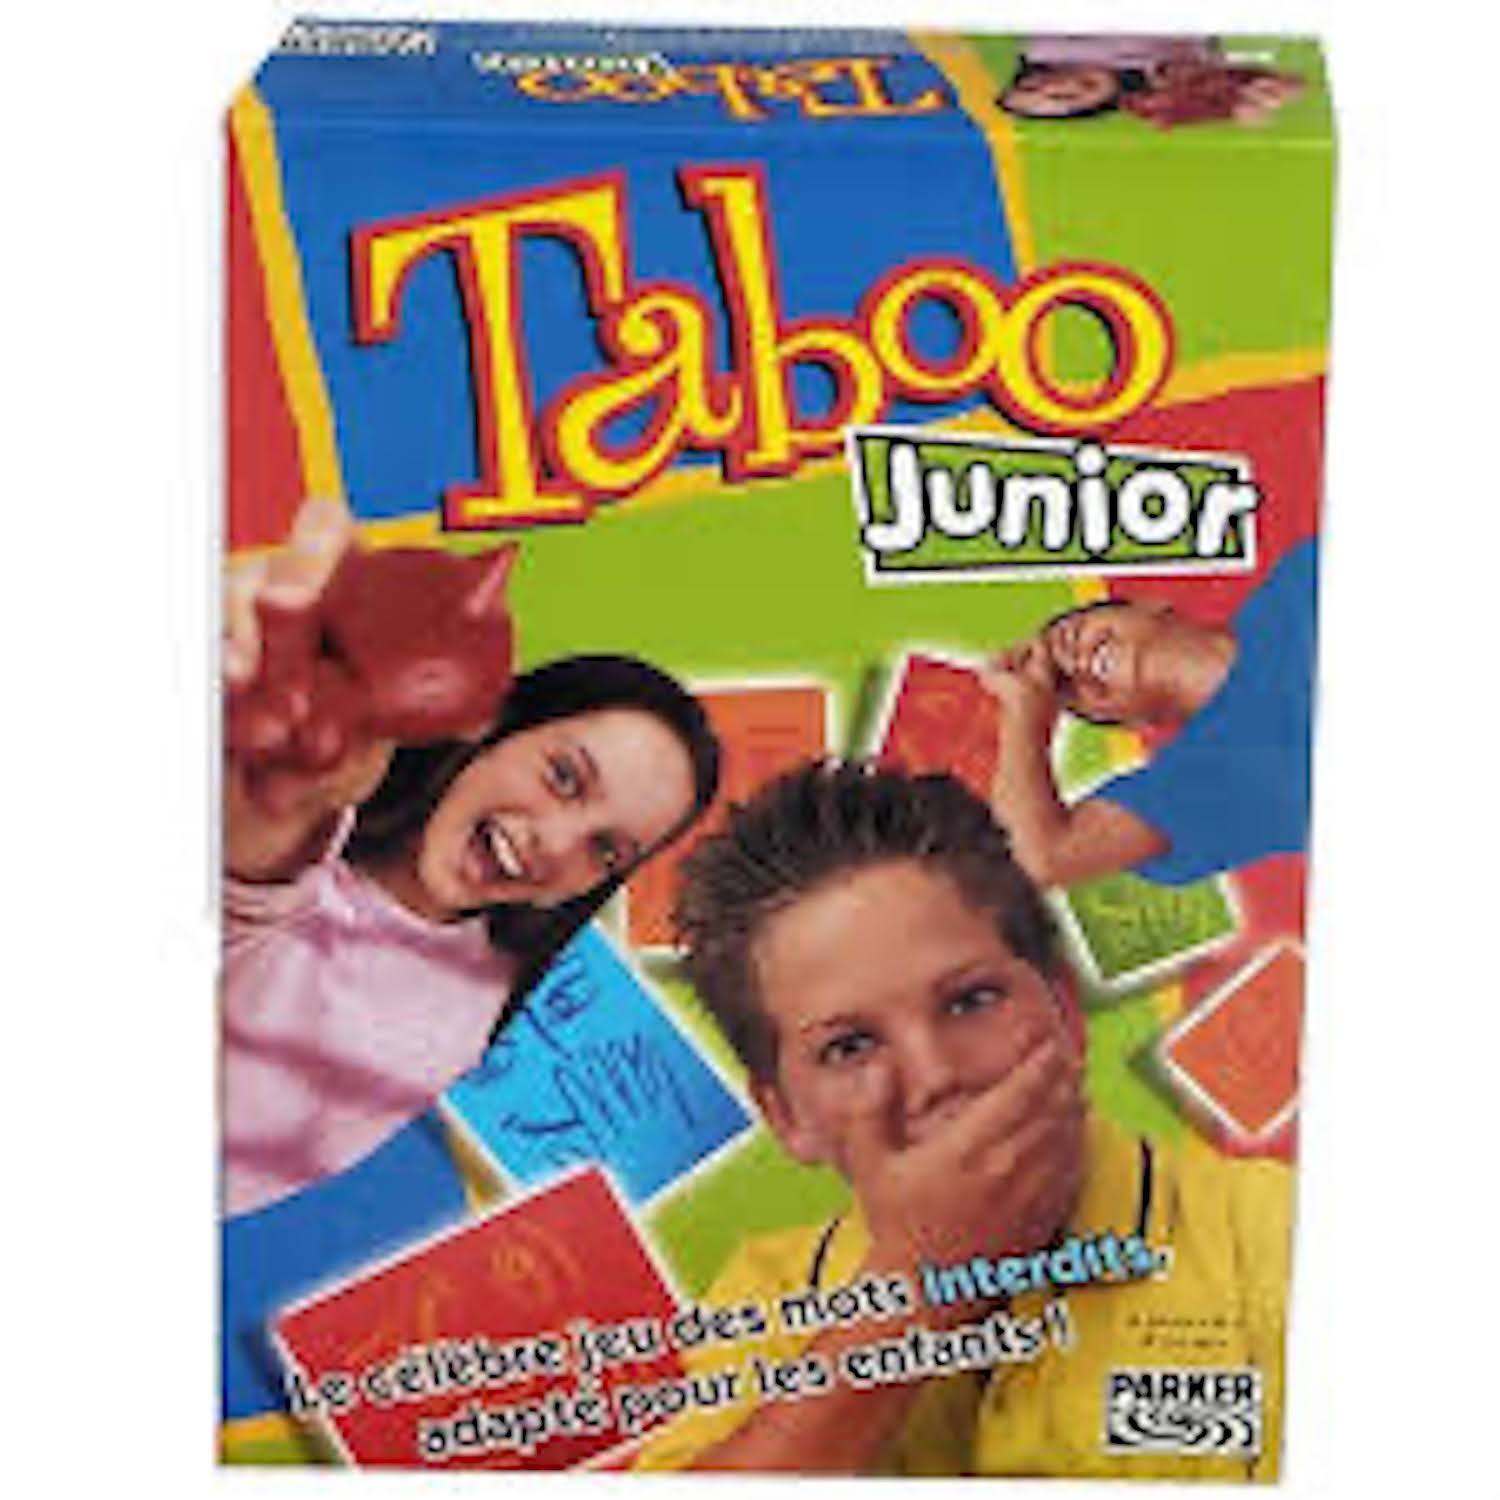 Taboo Junior - Ludothèque Le Dé-tour